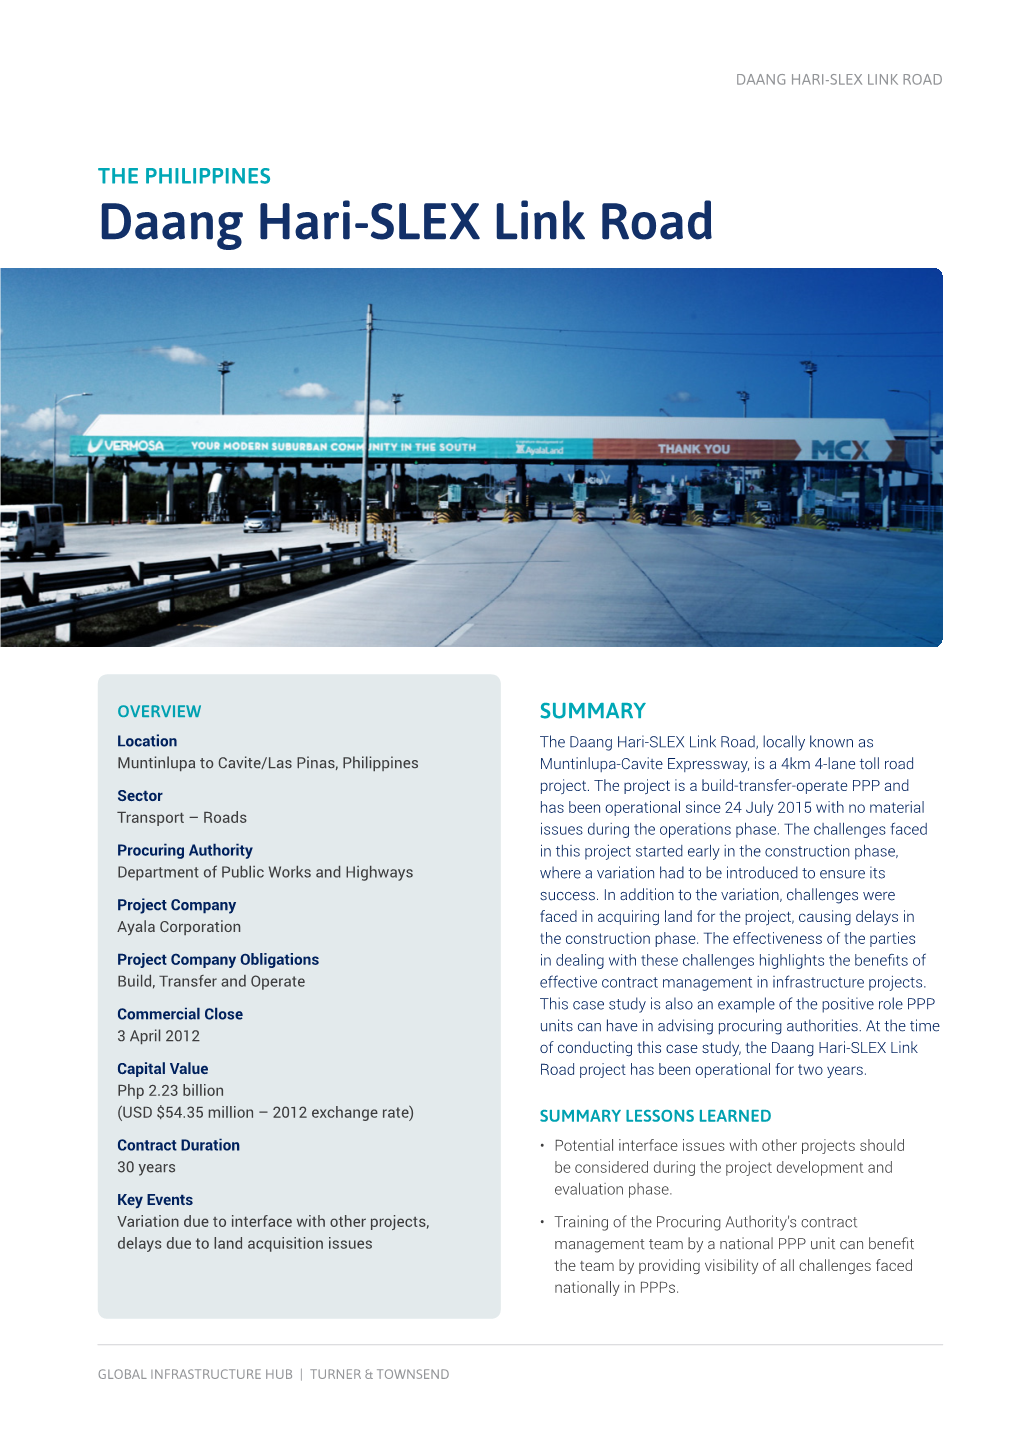 Daang Hari-SLEX Link Road, Philippines Case Study